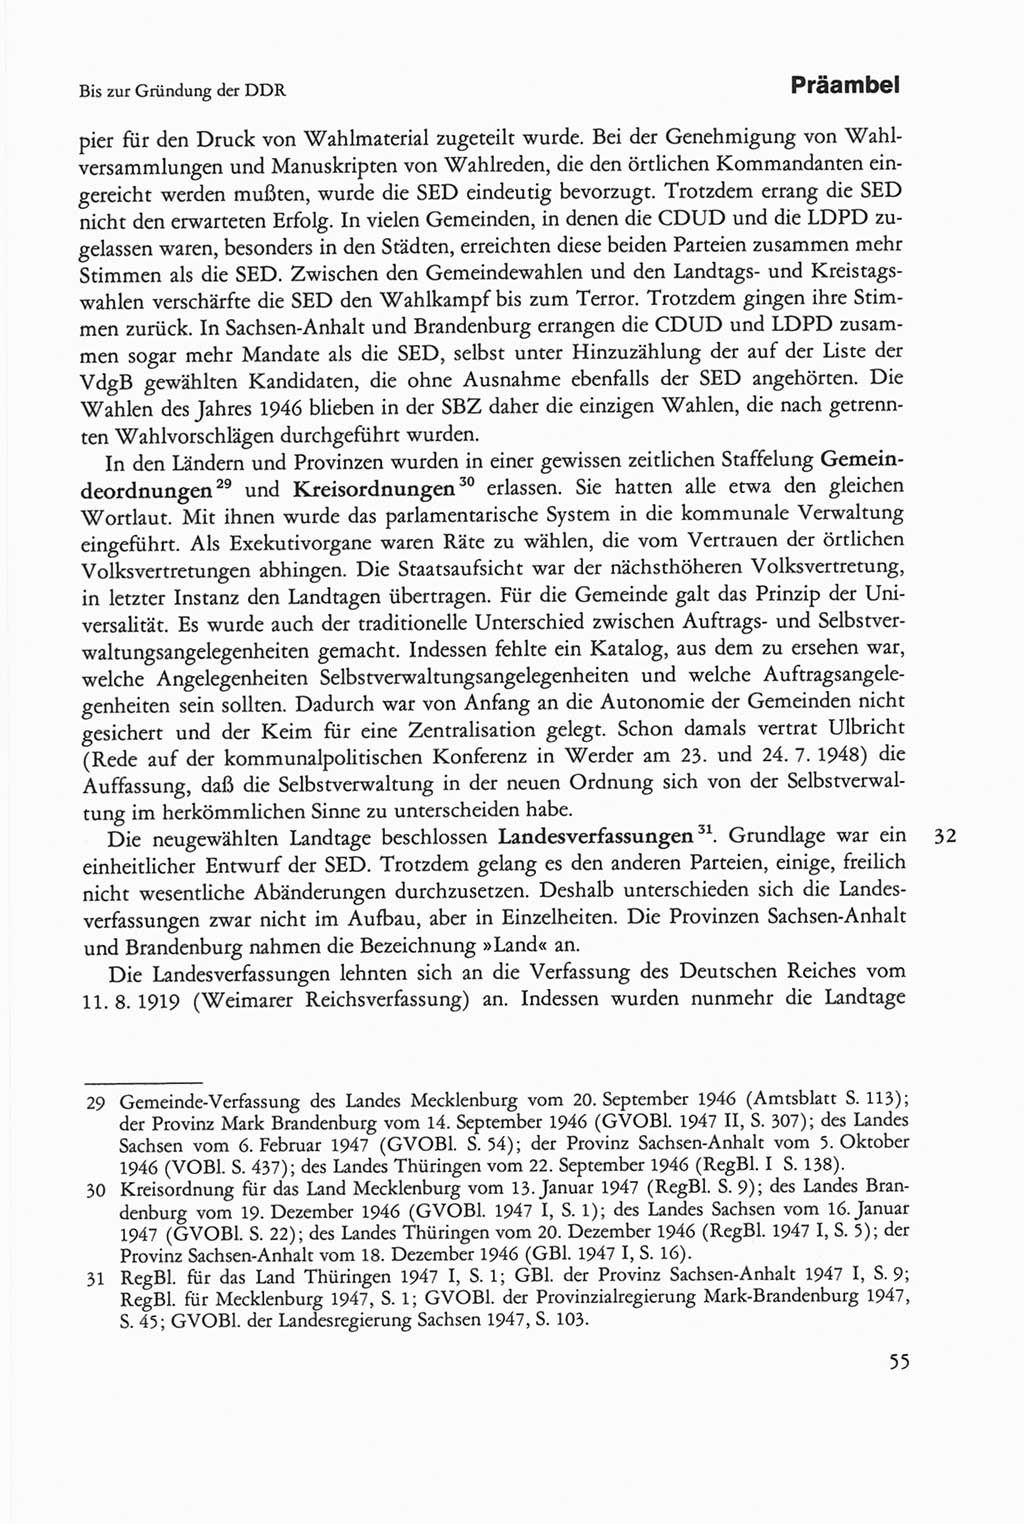 Die sozialistische Verfassung der Deutschen Demokratischen Republik (DDR), Kommentar 1982, Seite 55 (Soz. Verf. DDR Komm. 1982, S. 55)